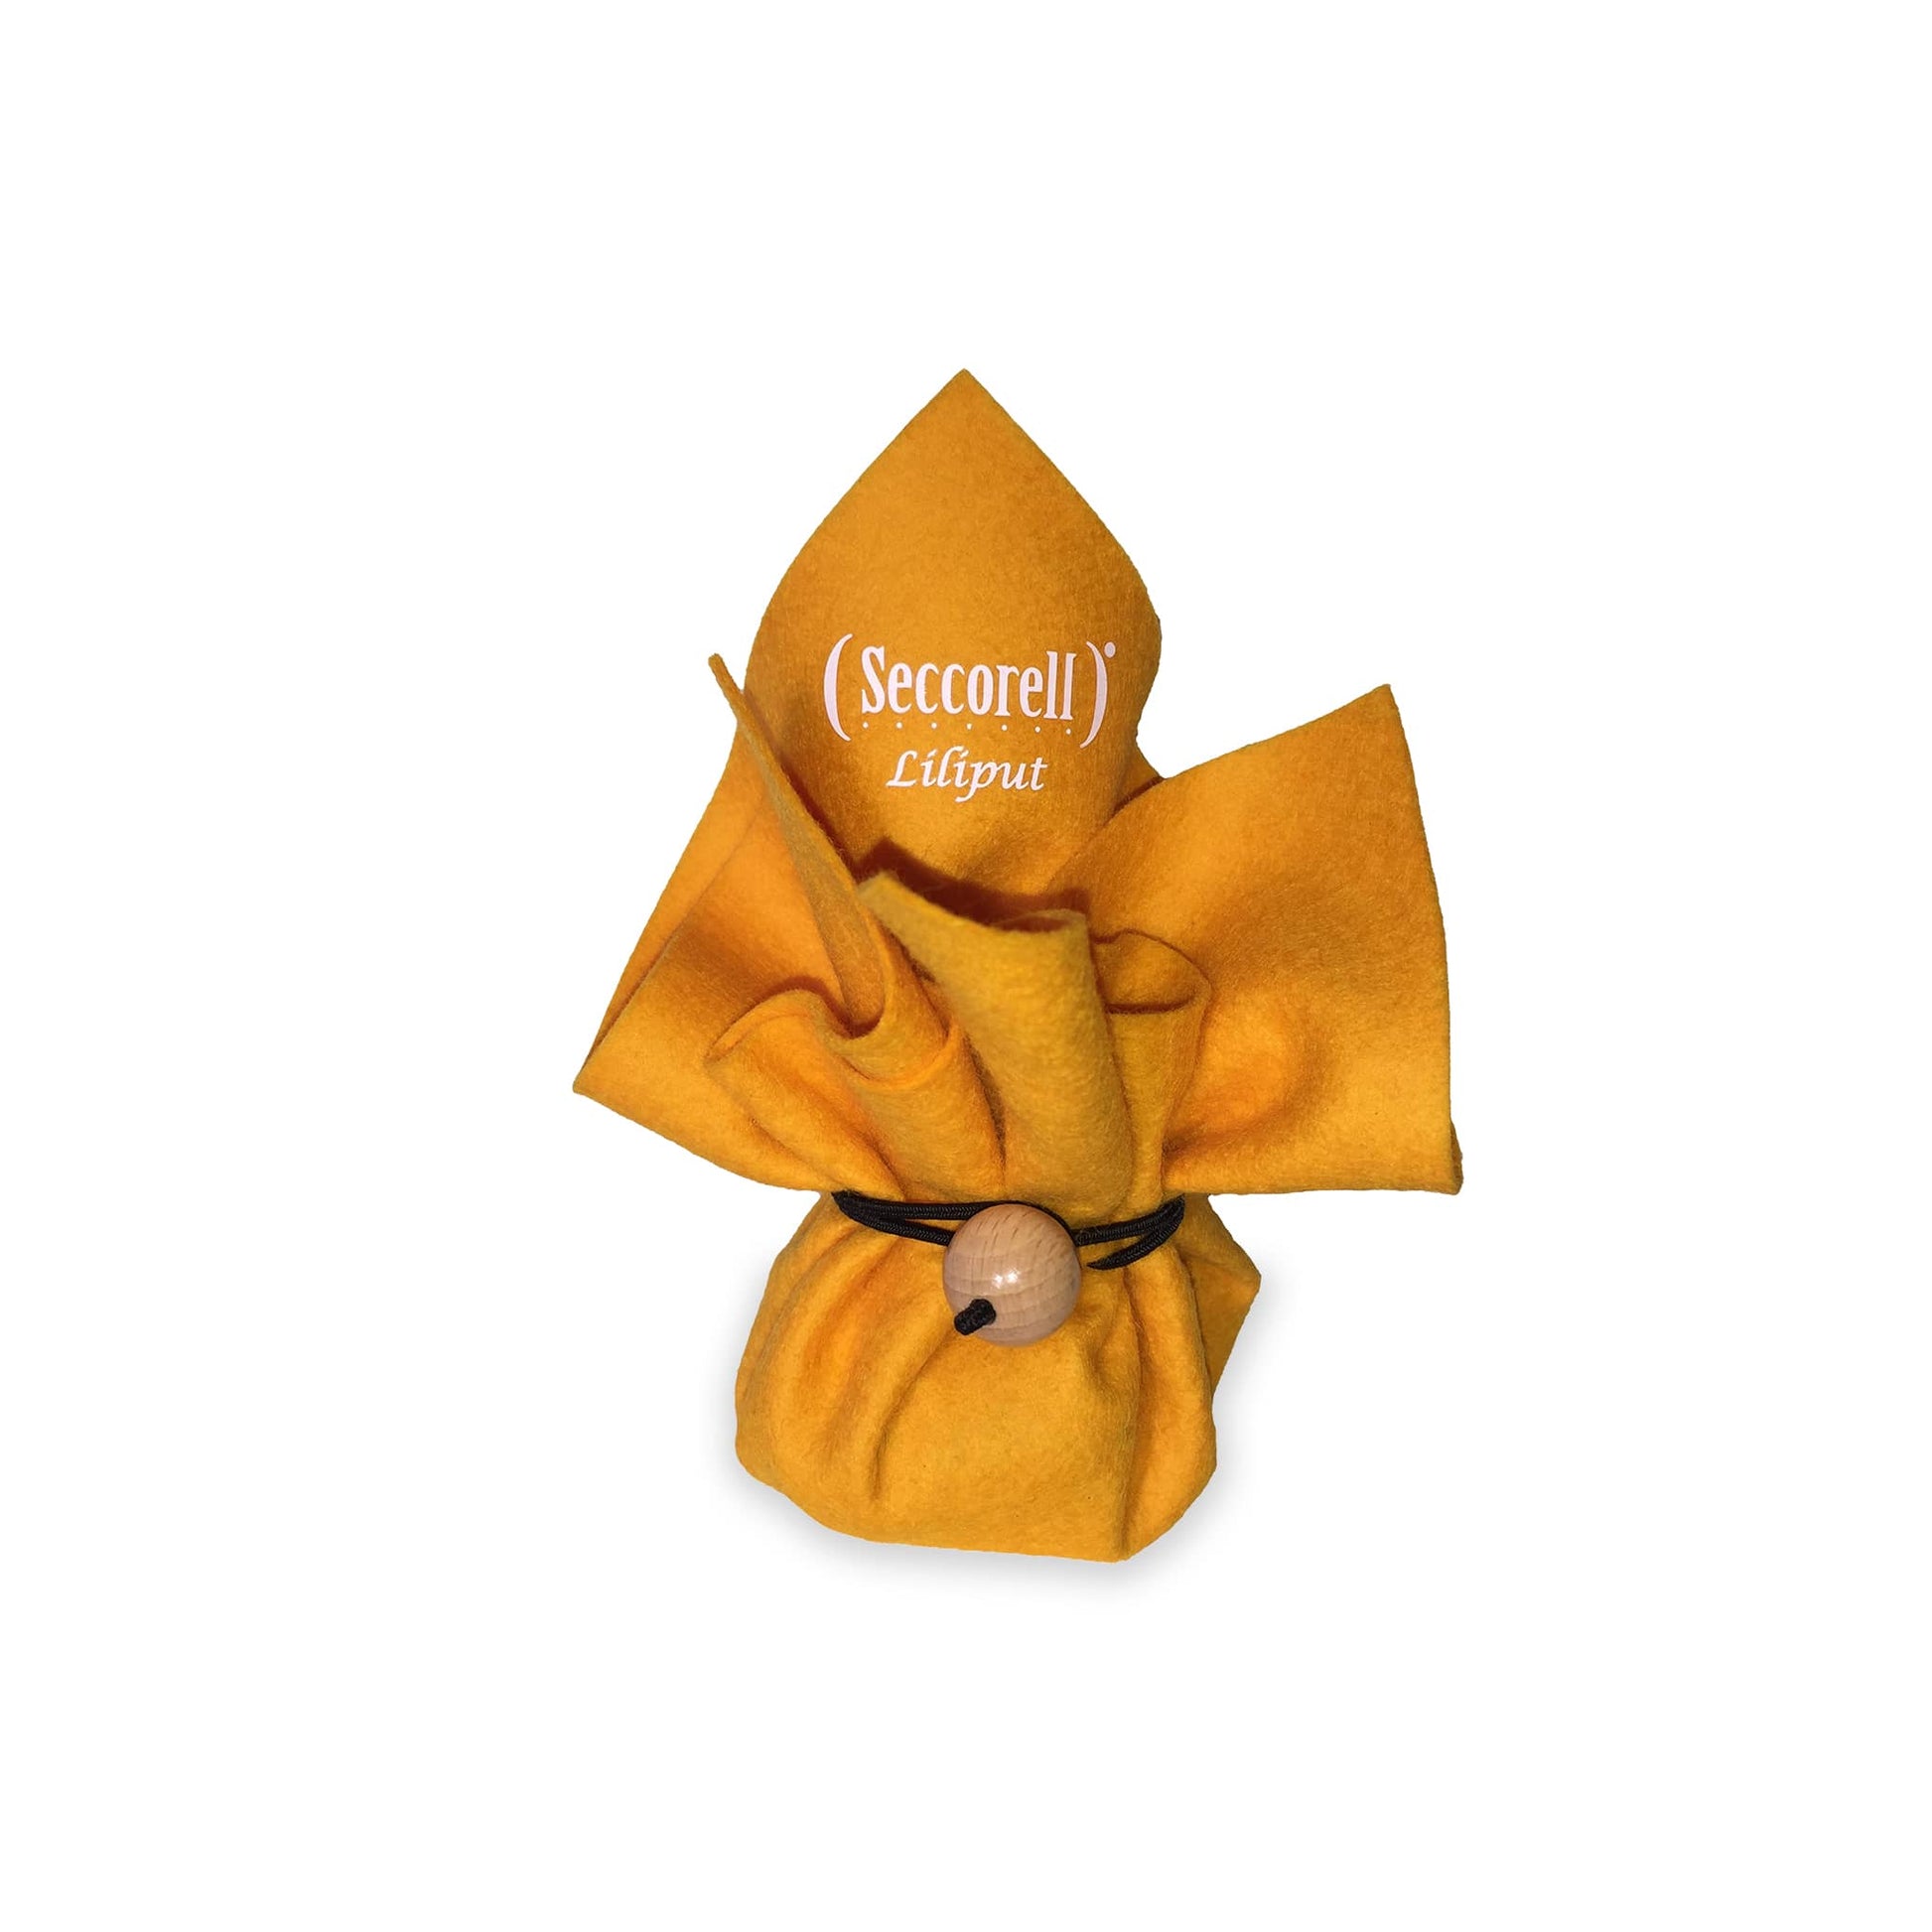 Seccorell Liliput "Sonnengelb", ein strahlendes Malset verpackt in einem gelben Wollfilzbeutel, bereit für inspirierte Kunstwerke unterwegs.